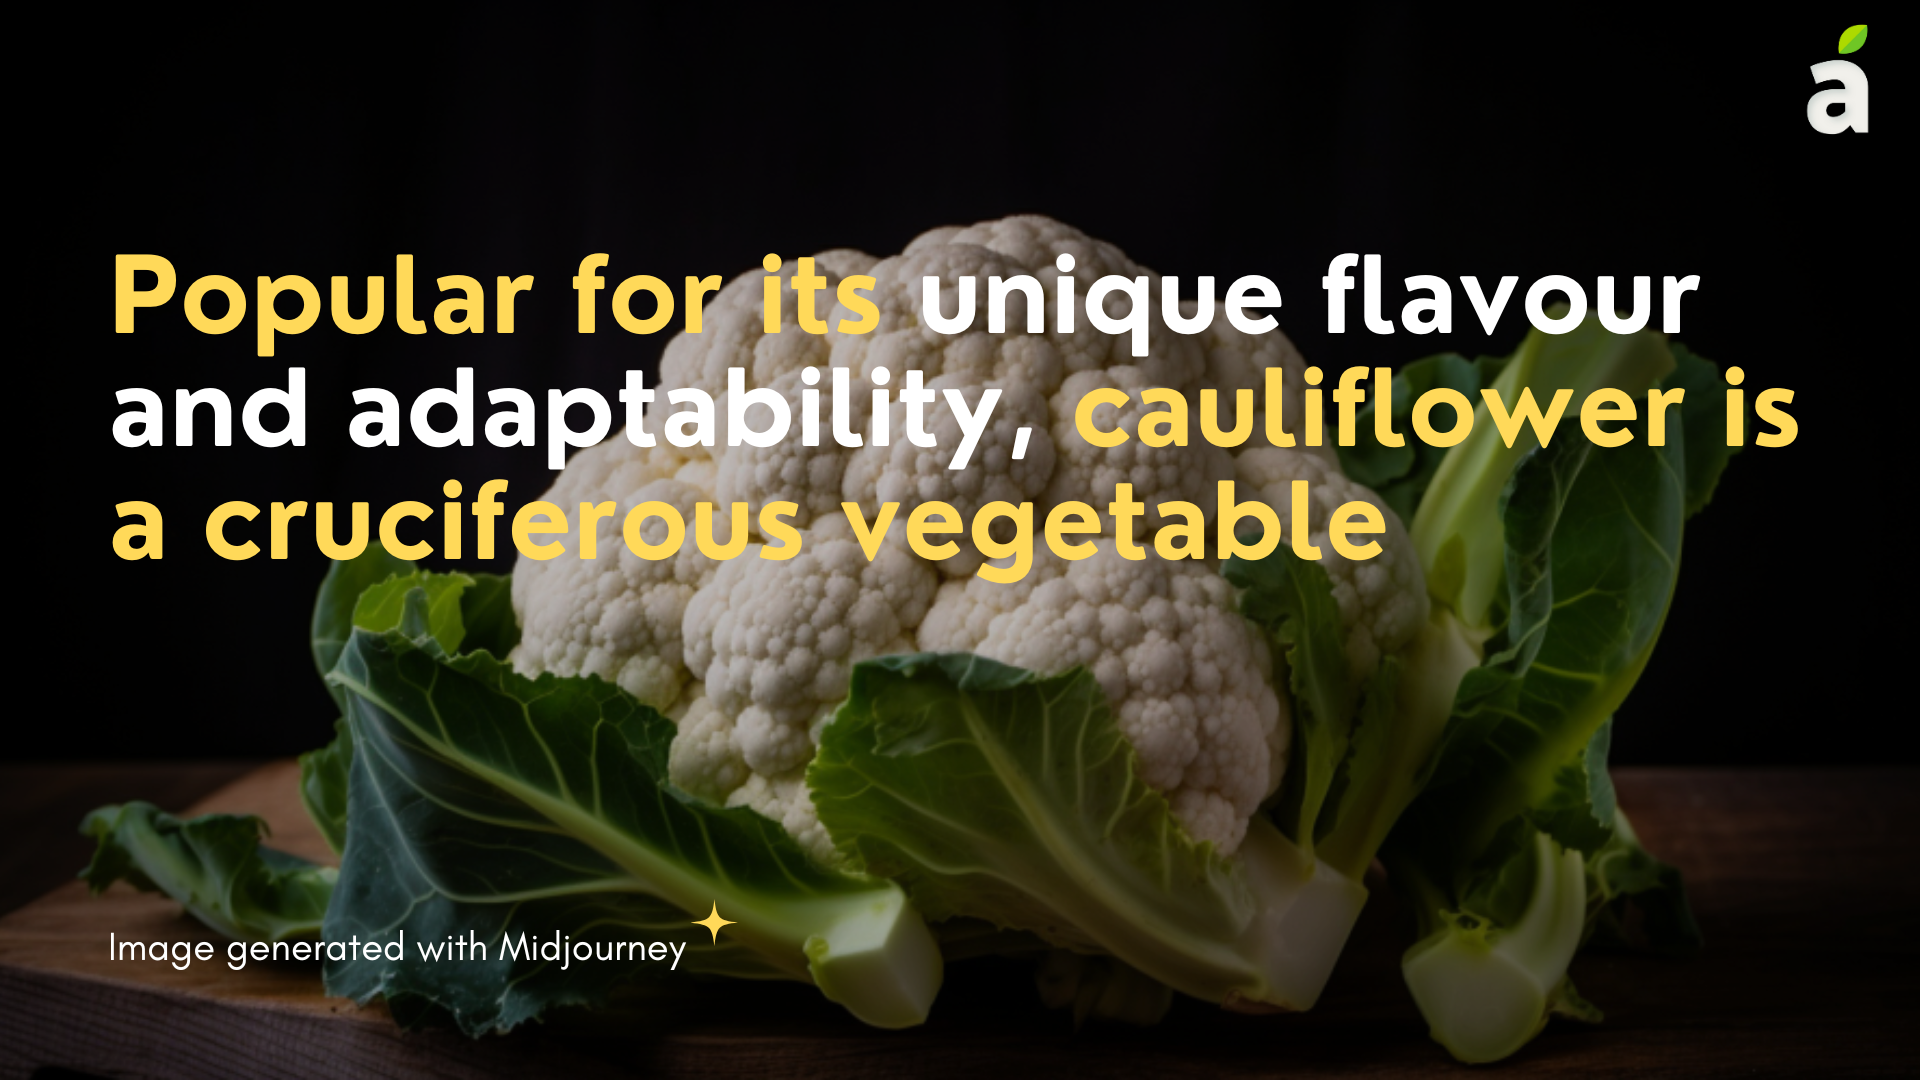 Cauliflower blog